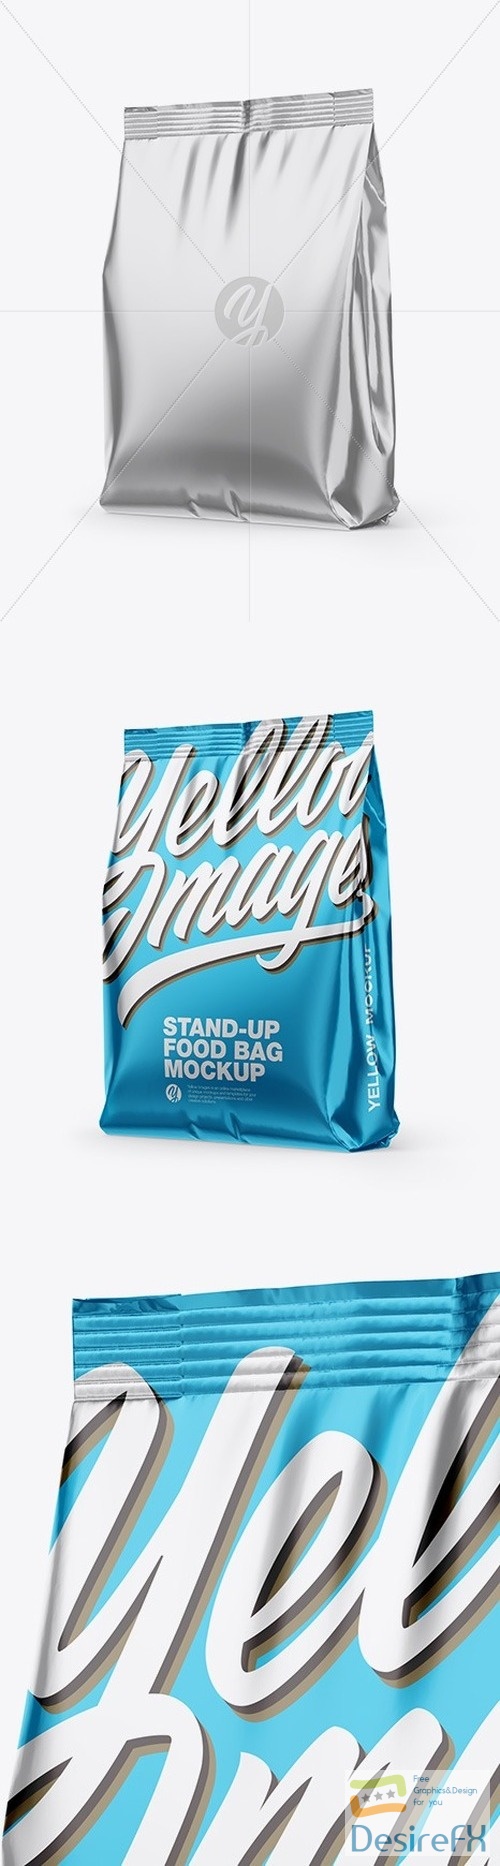 Metallic Stand-Up Bag Mockup - Half Side View 56349